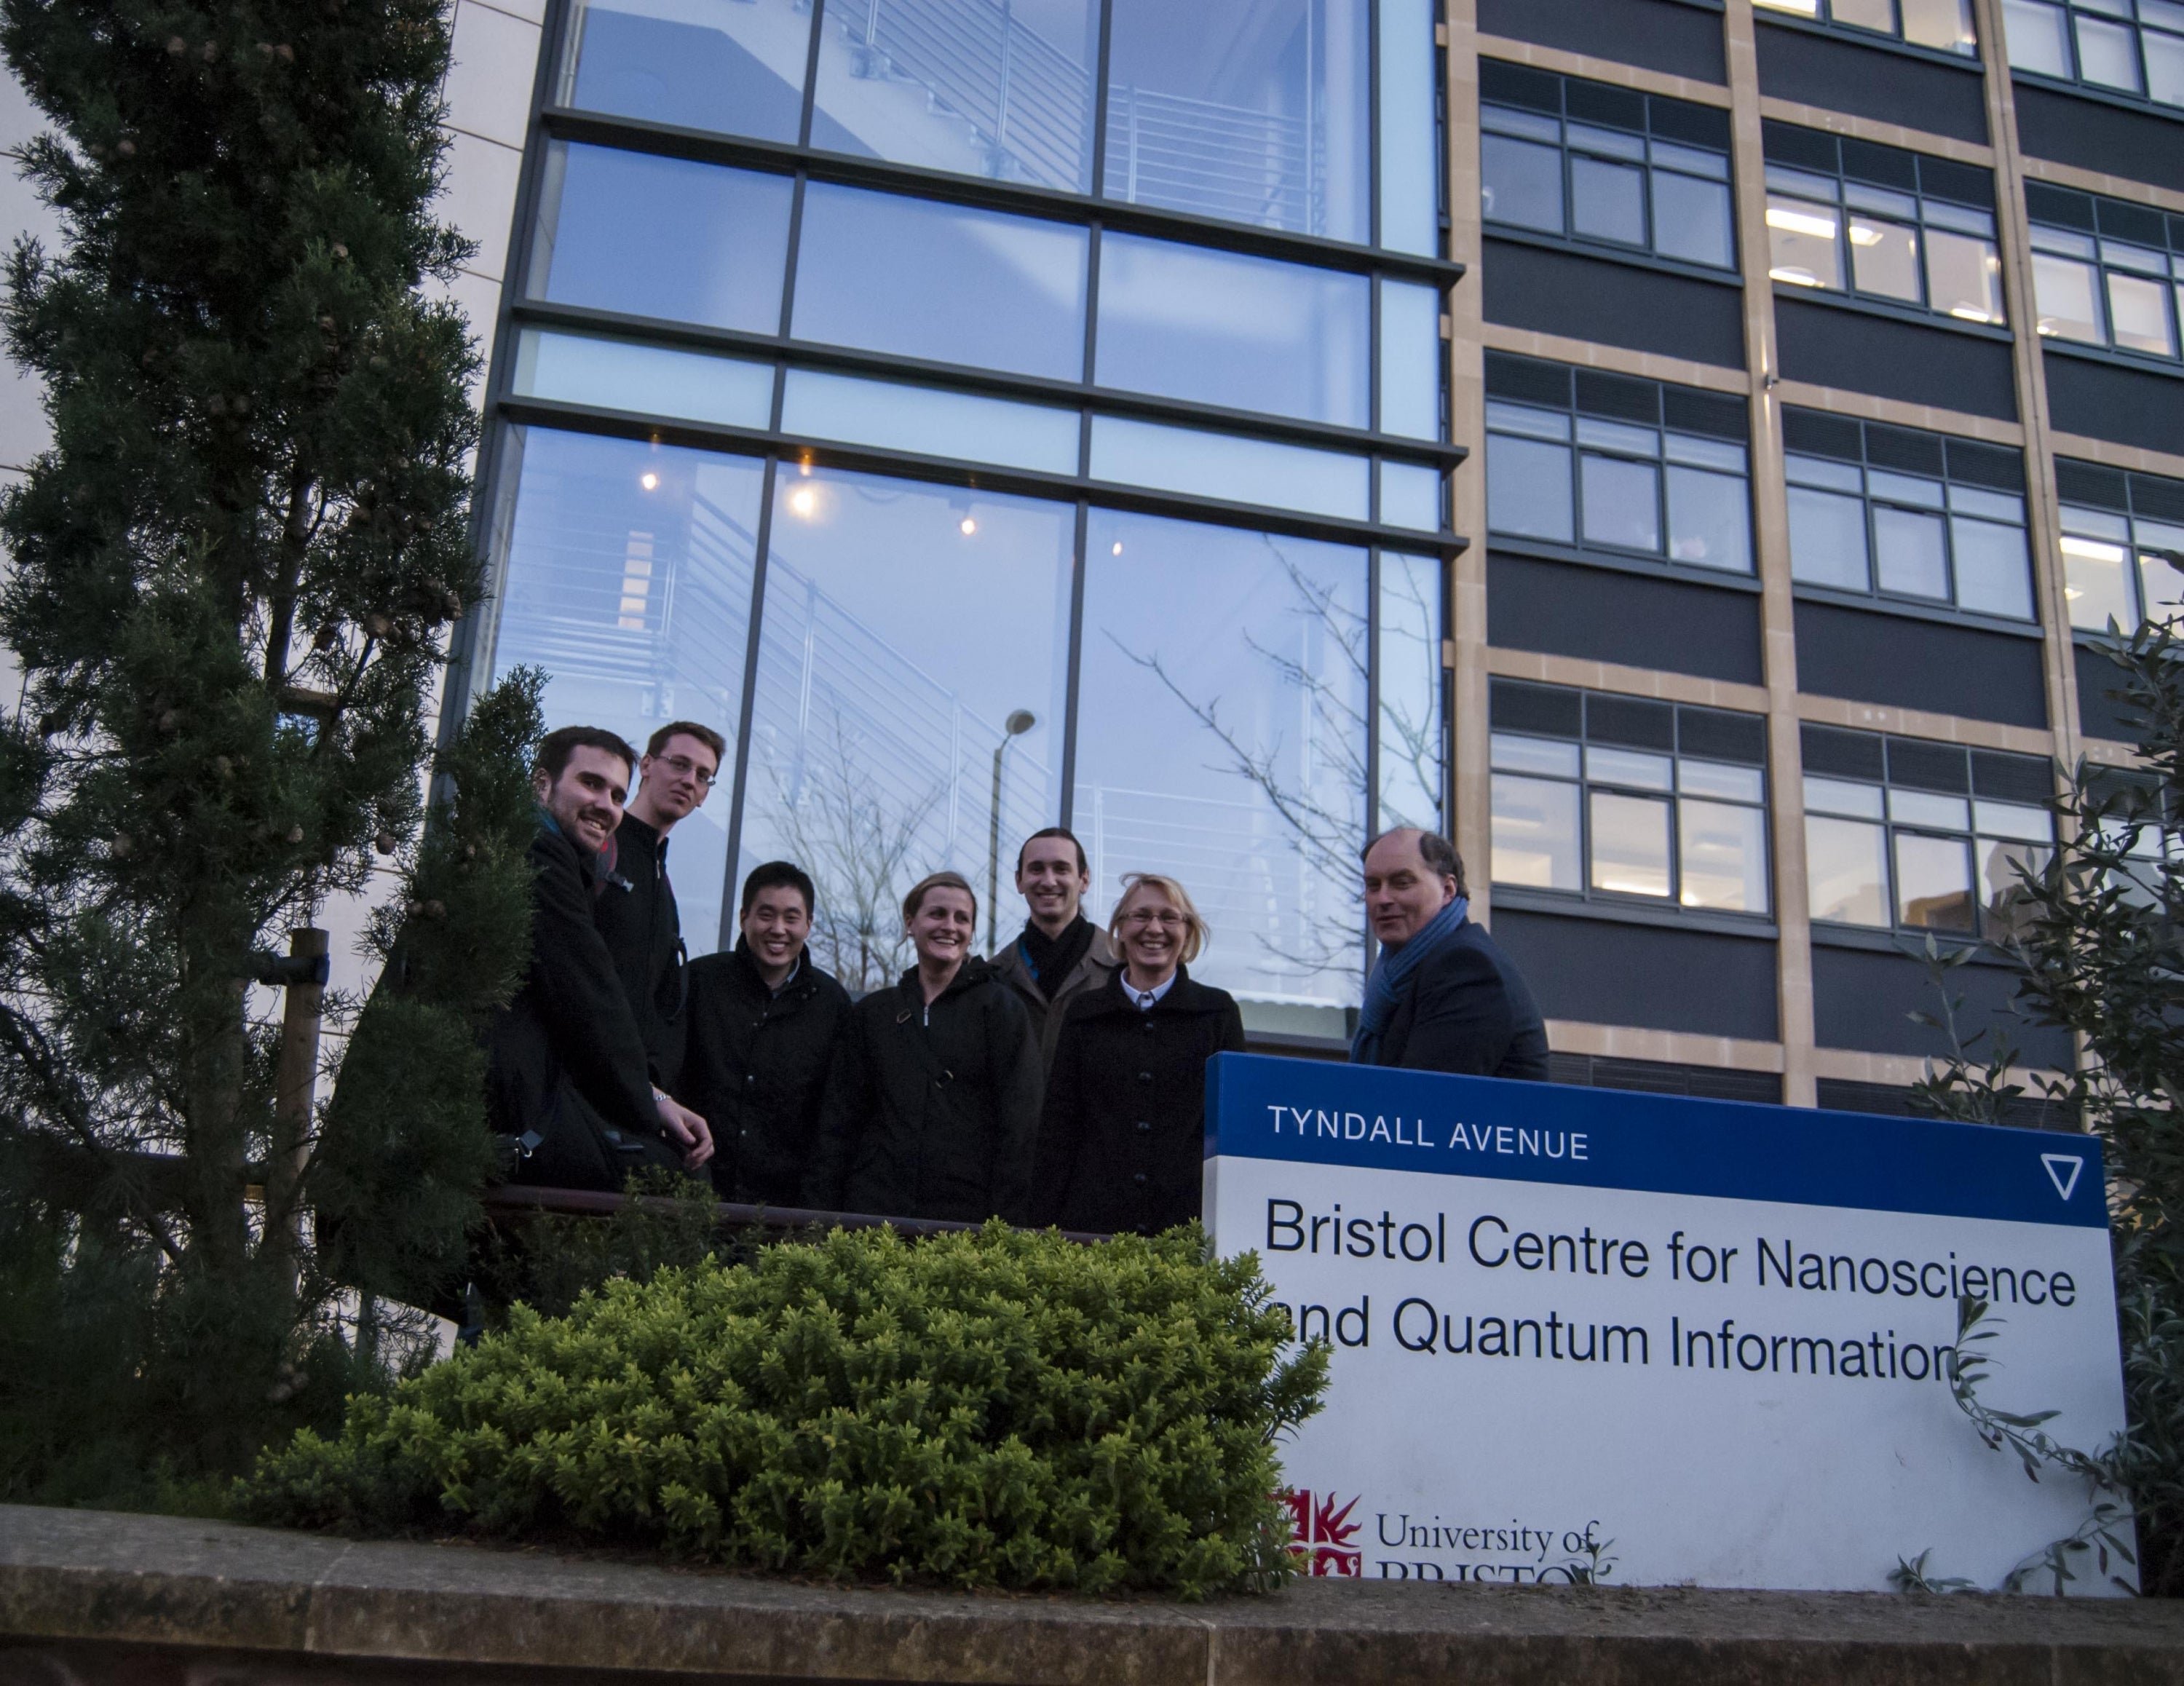 Attending International Nanotechnology Graduate Student Meeting in Bristol 2013